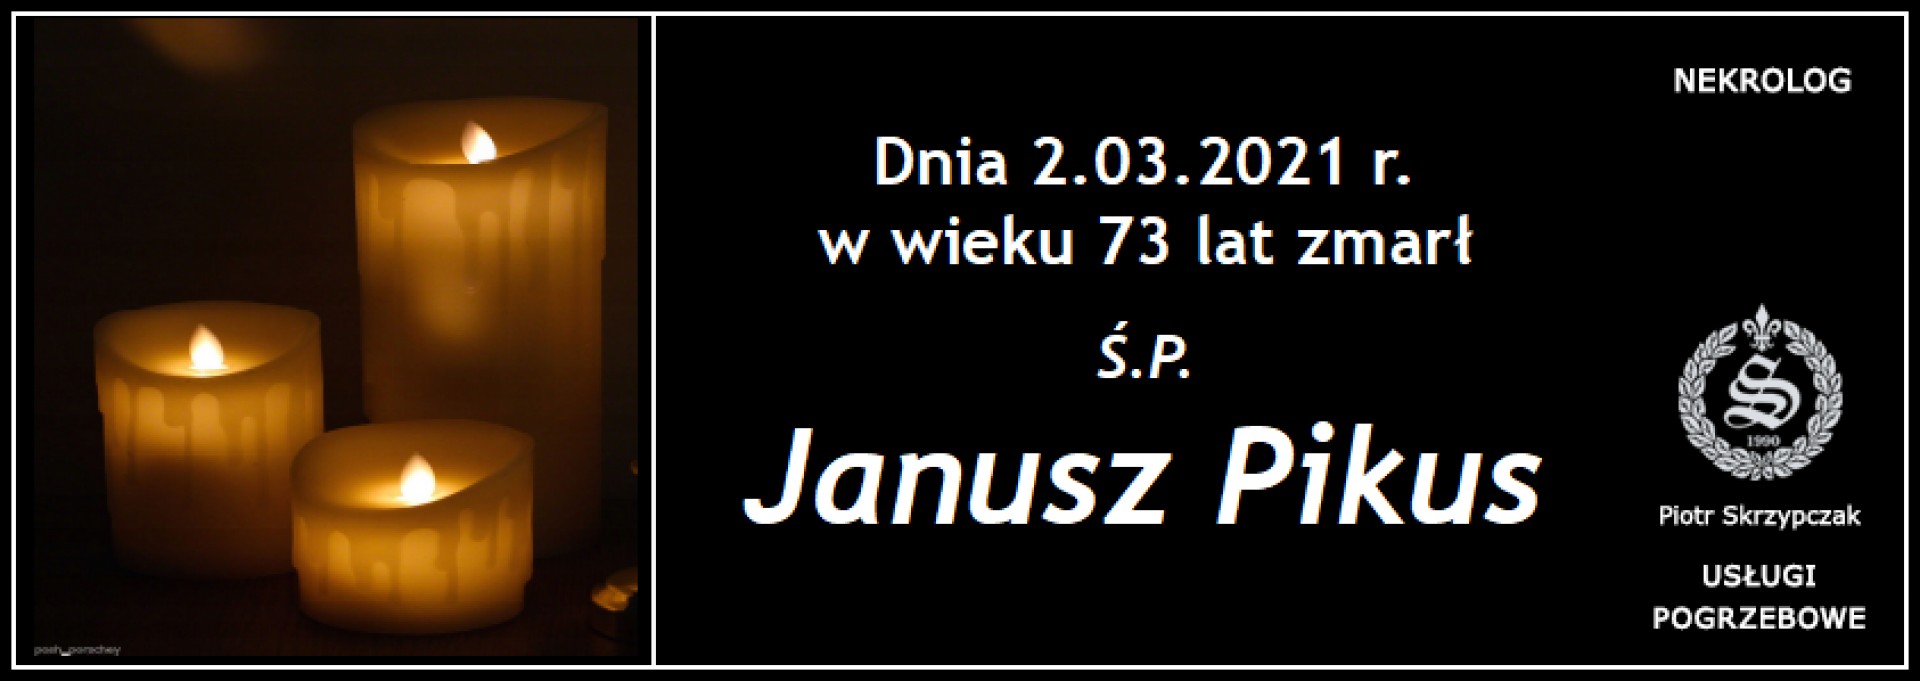 Ś.P. Janusz Pikus